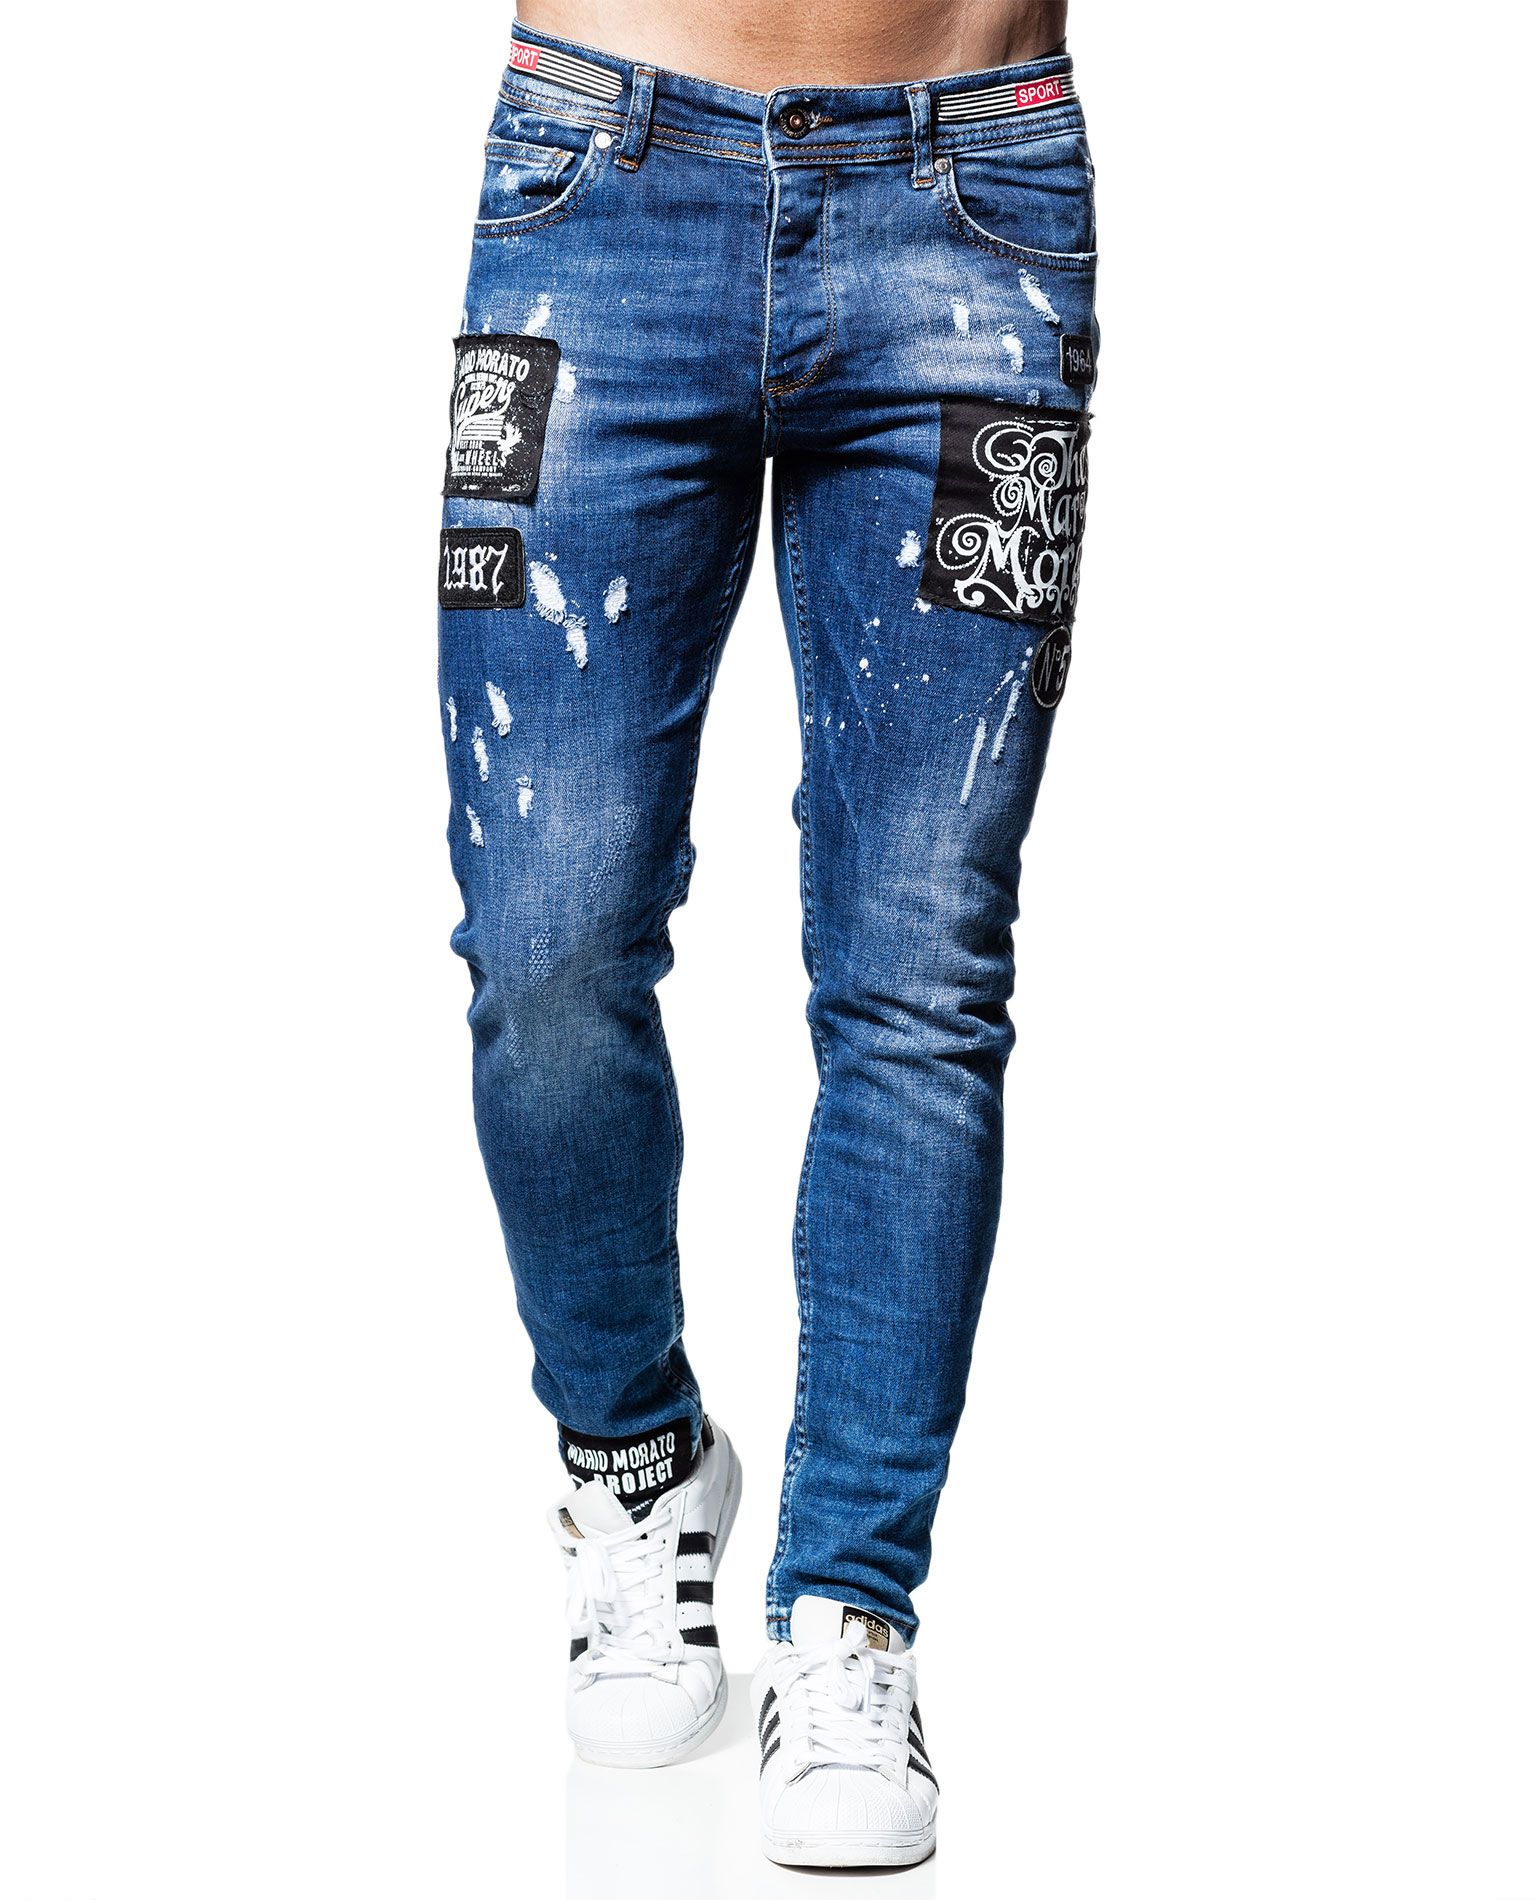 Mario Morato Blue L32 Jerone - 3512 - Jeans - Jerone